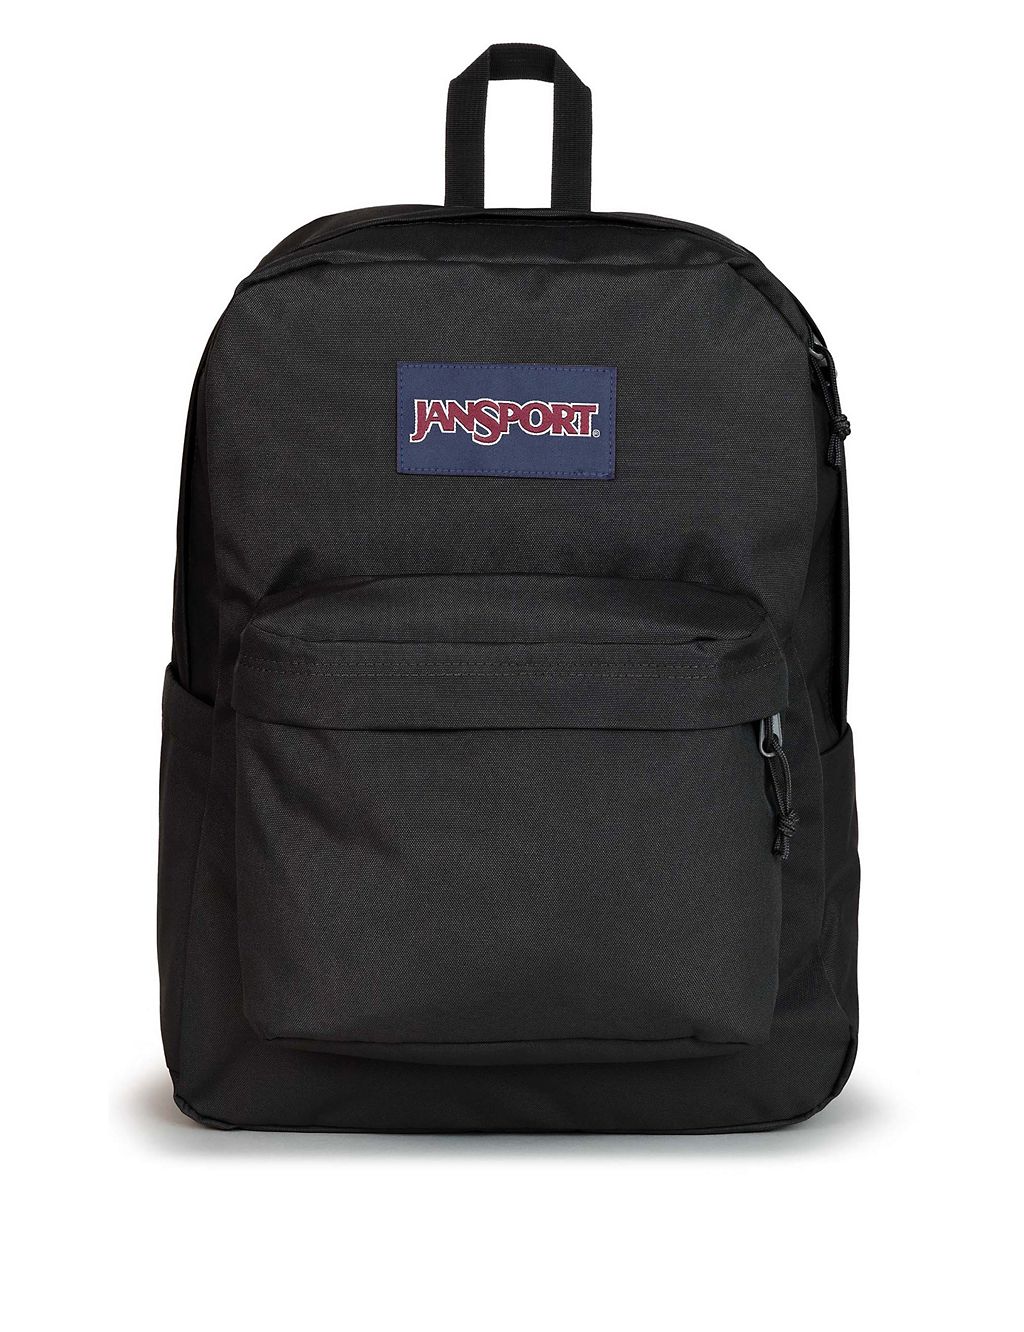 SuperBreak Plus Backpack 3 of 8